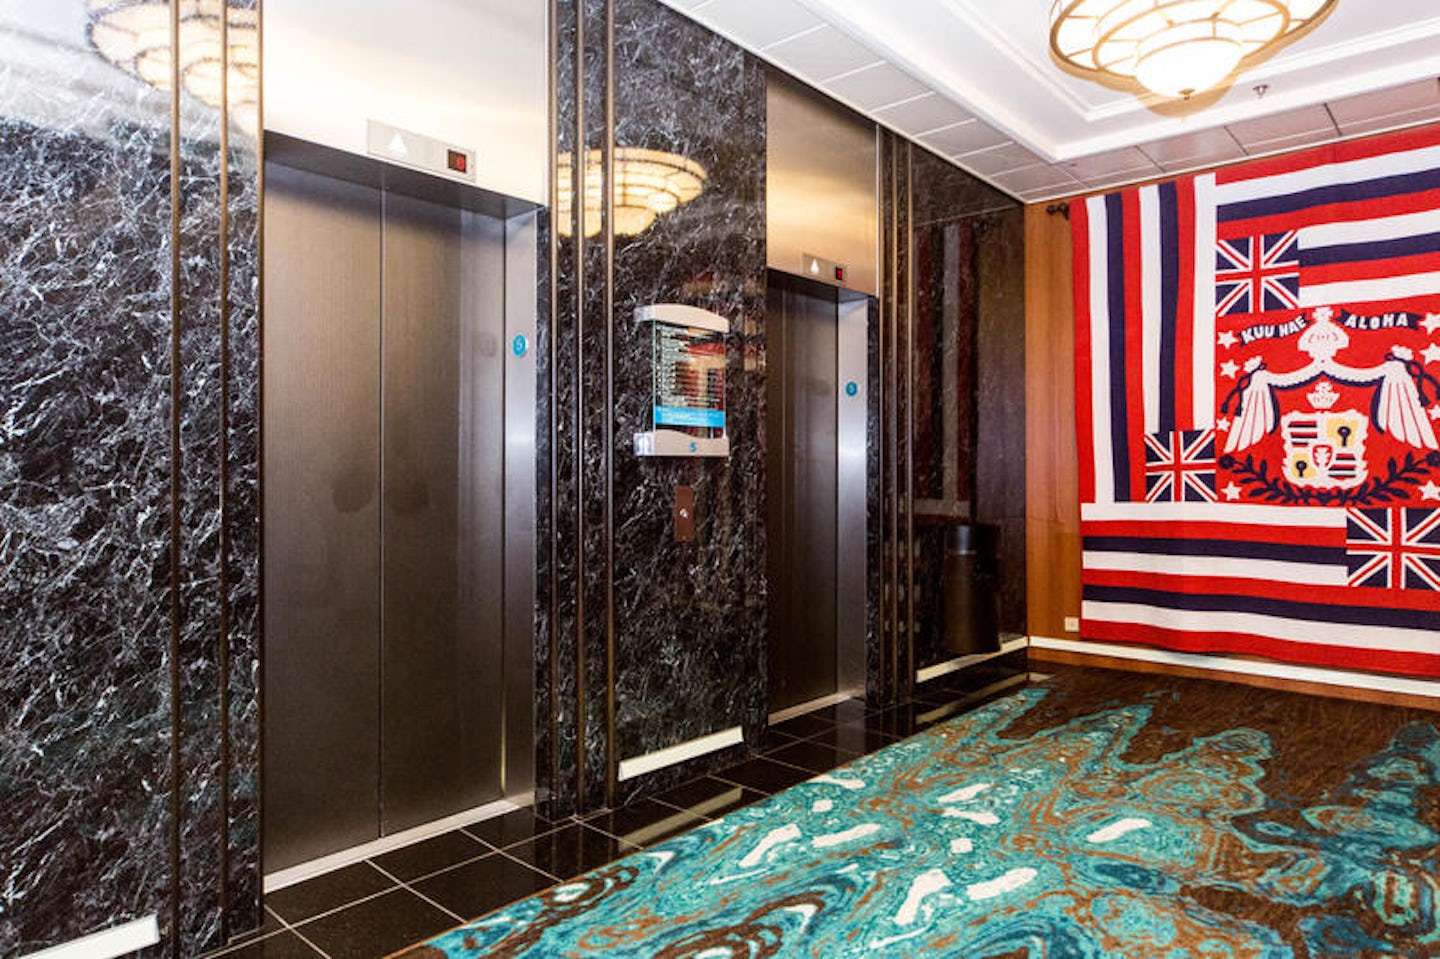 Elevators on Pride of America